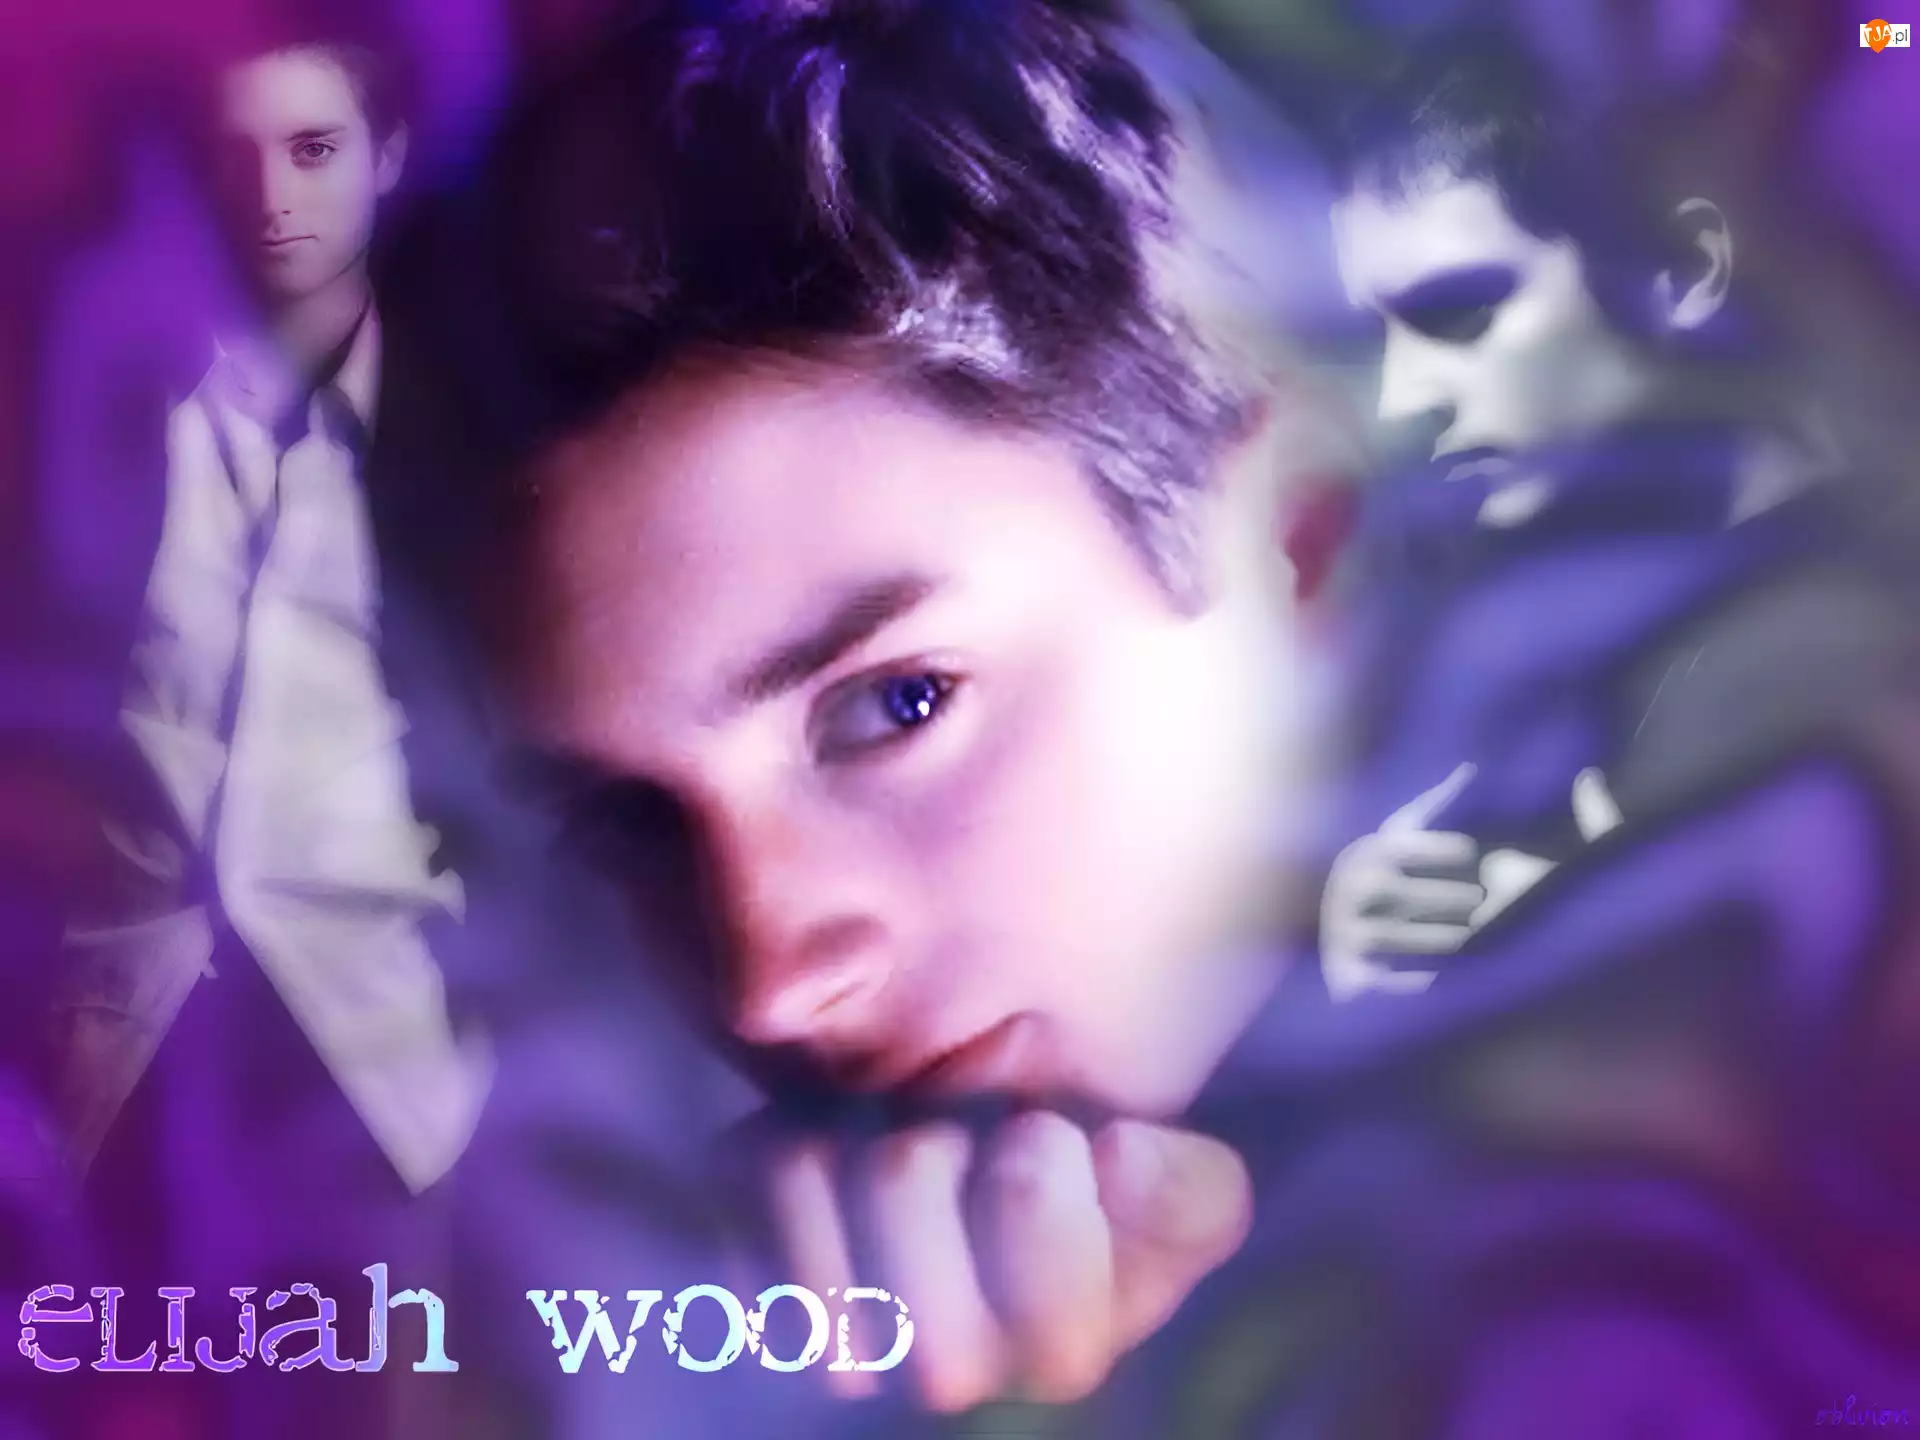 niebieskie oczy, Elijah Wood